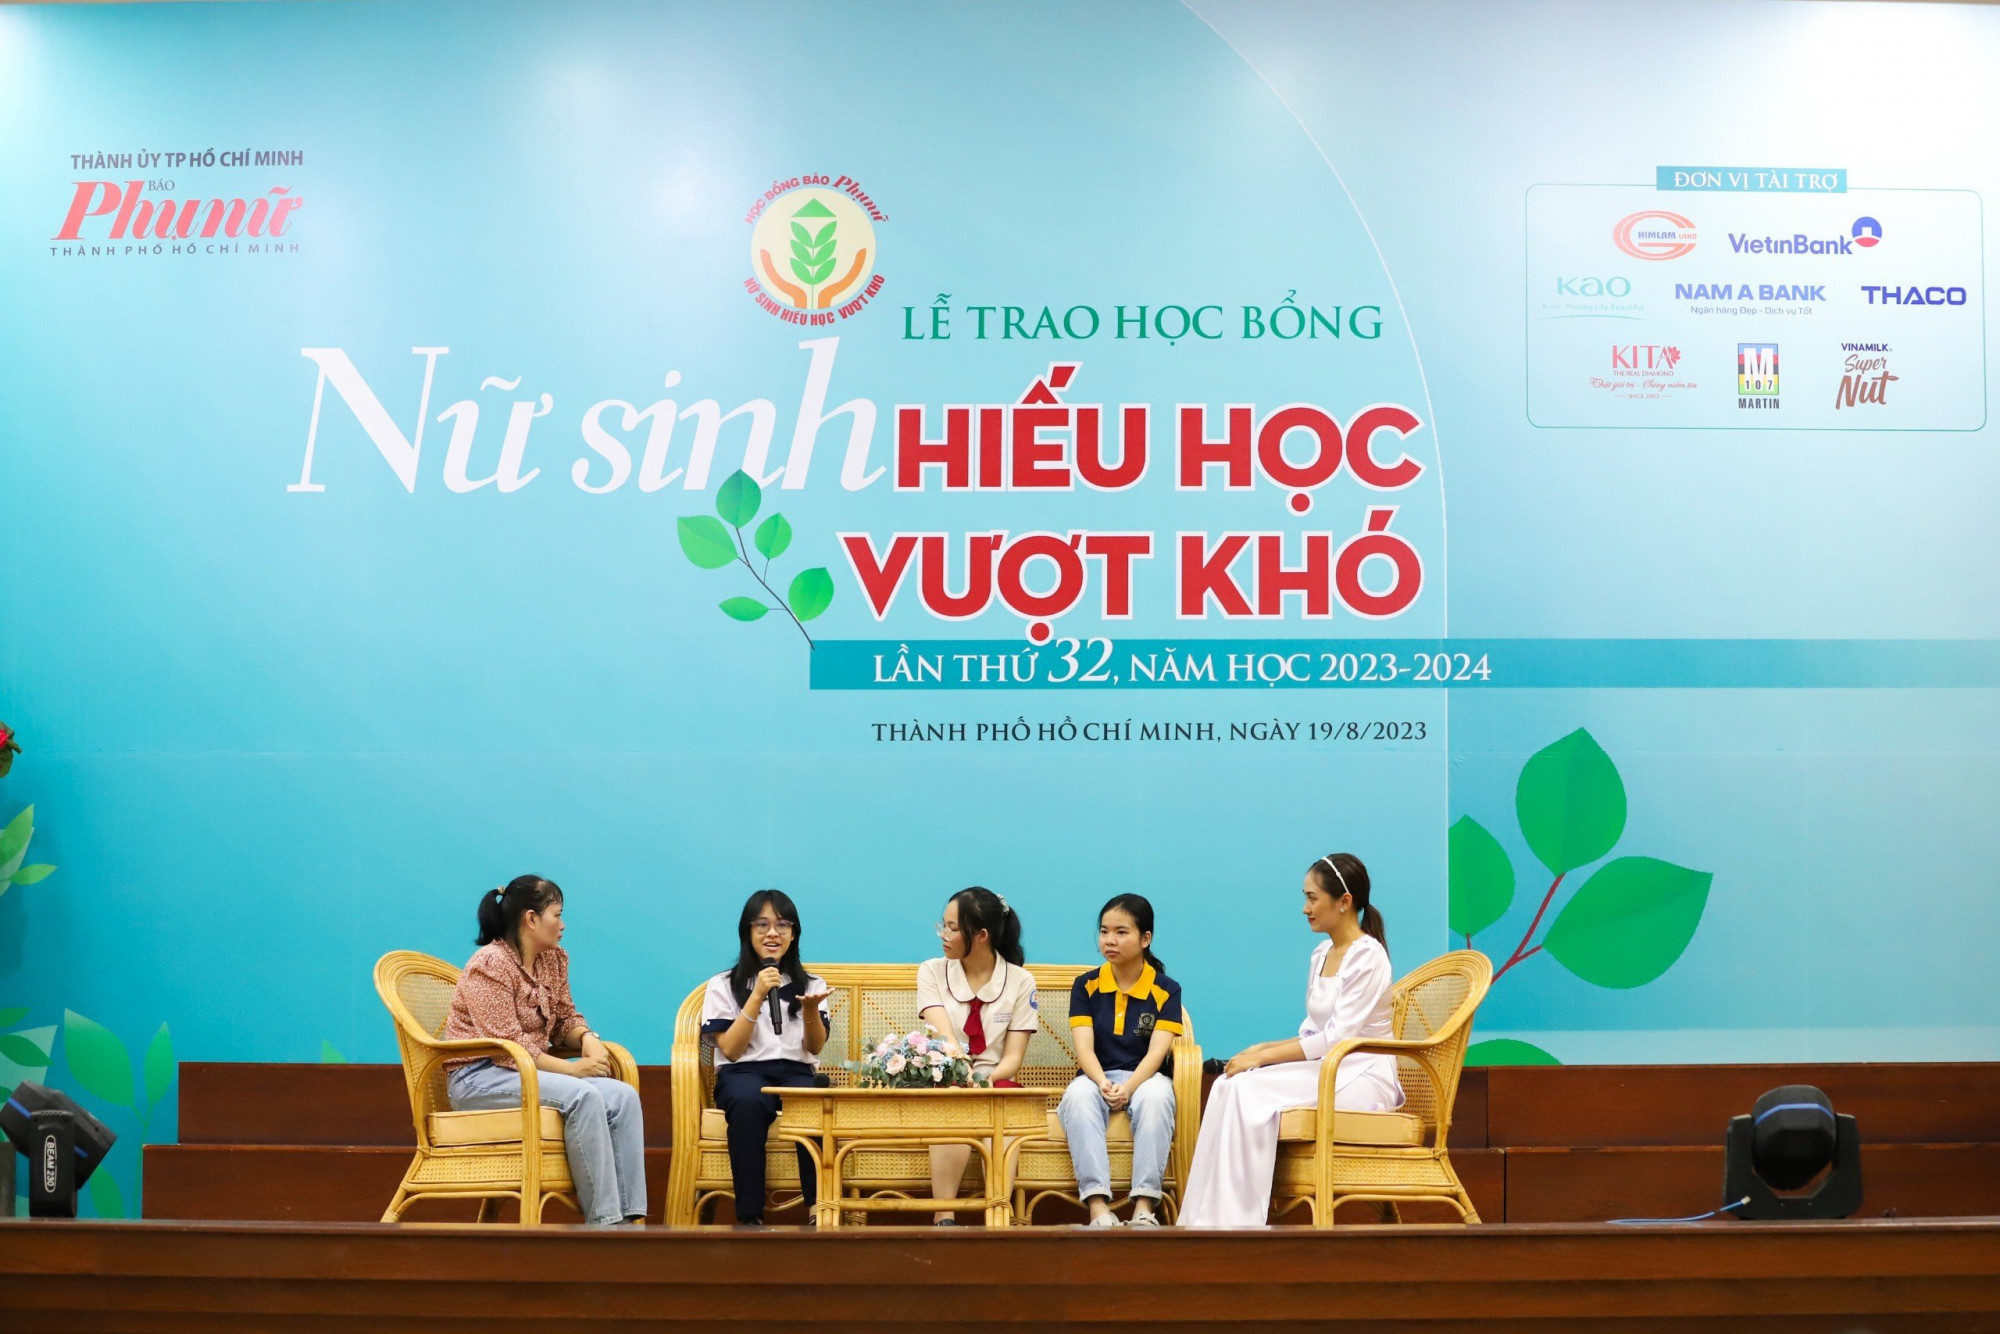 Thứ hai từ trái sang: nữ sinh Đinh Trần Giáng My, Trần Đỗ Thanh Thanh và Nguyễn Thị Nga